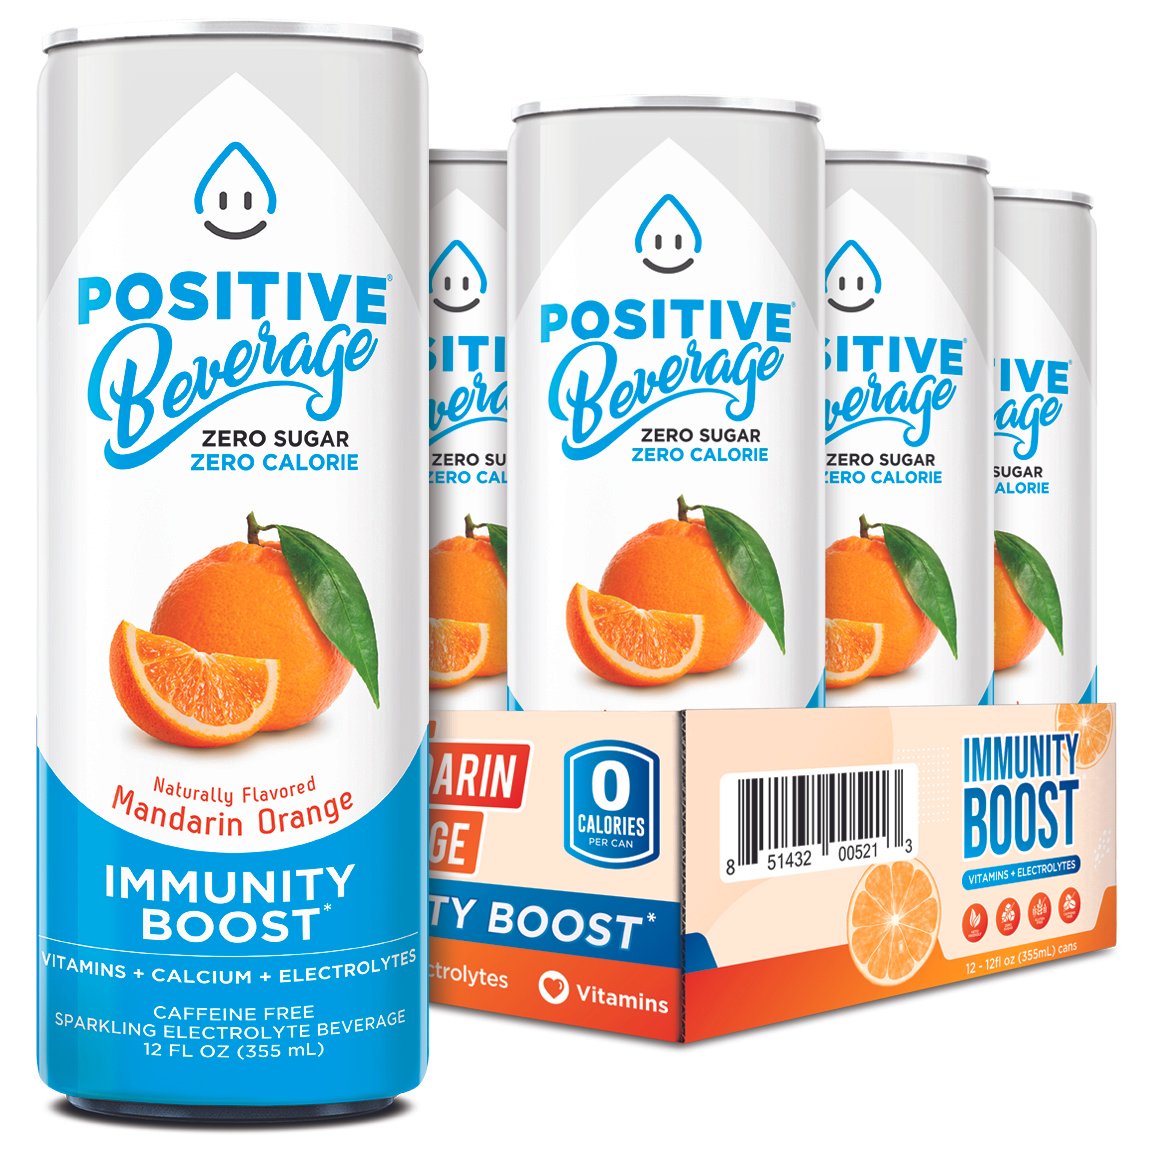 positive-beverage-drink-mandarin-orange-cans.jpg